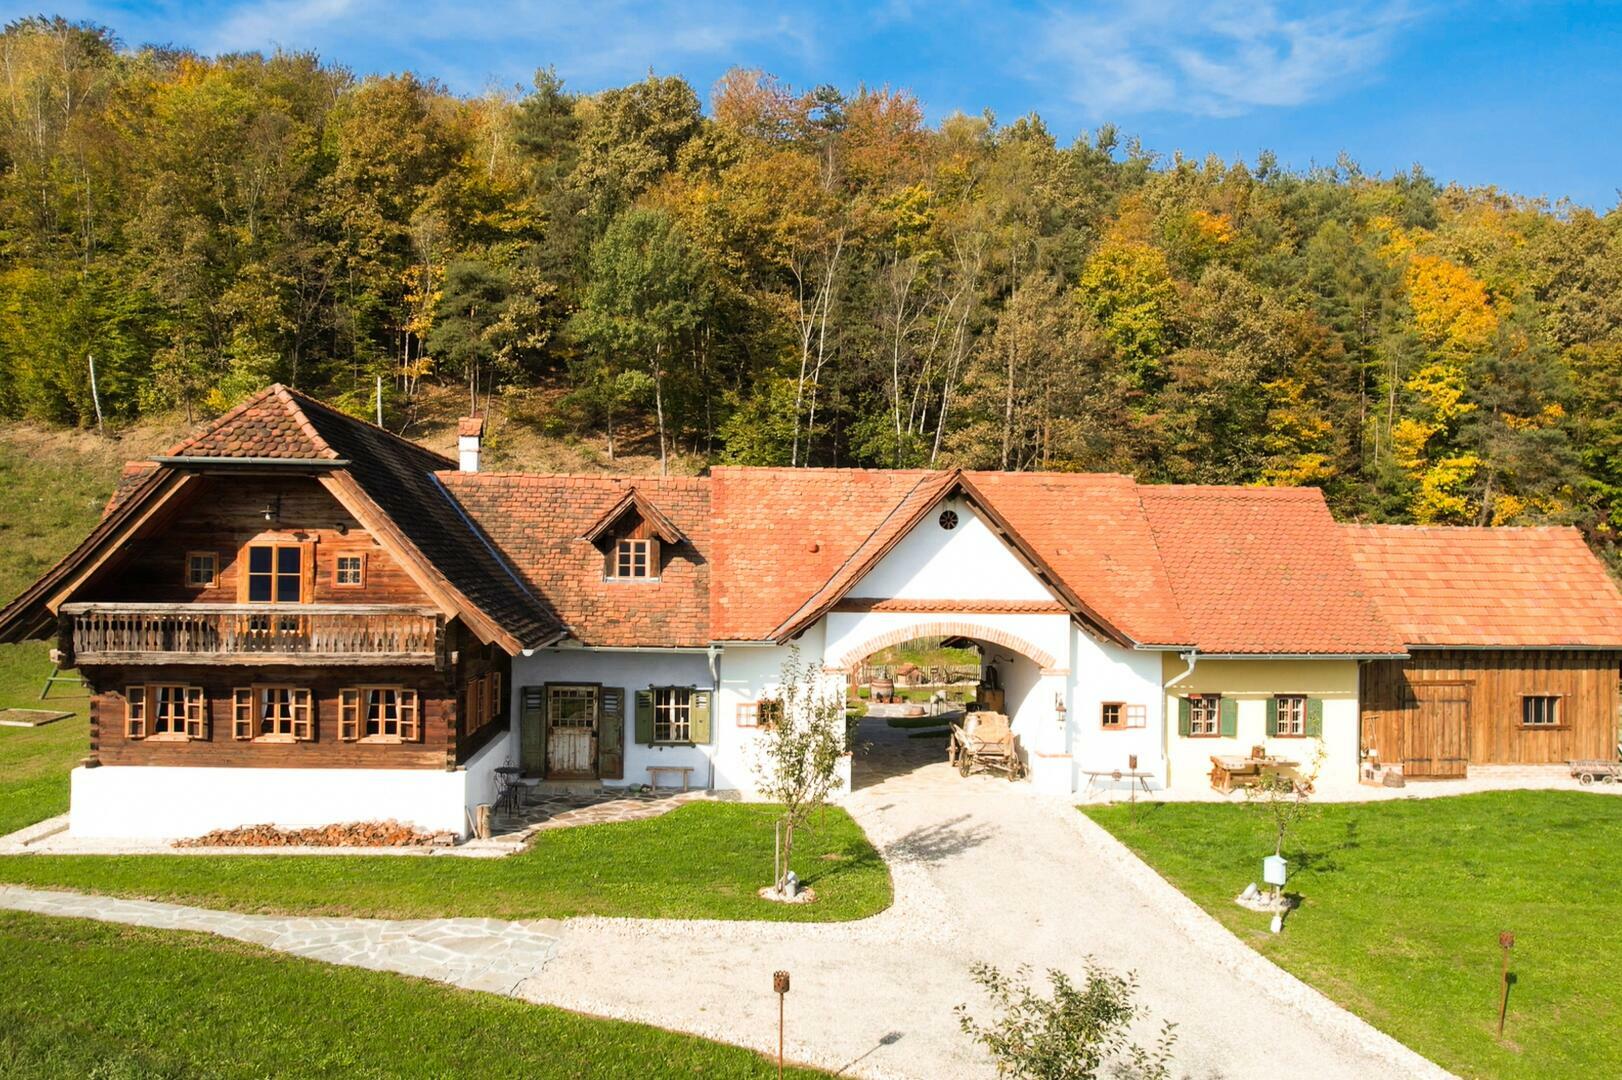 Land- und Forstwirtschaft zu kaufen: Ober-Henndorf, 8020 Graz - Landhaus in Thermenregion (3)